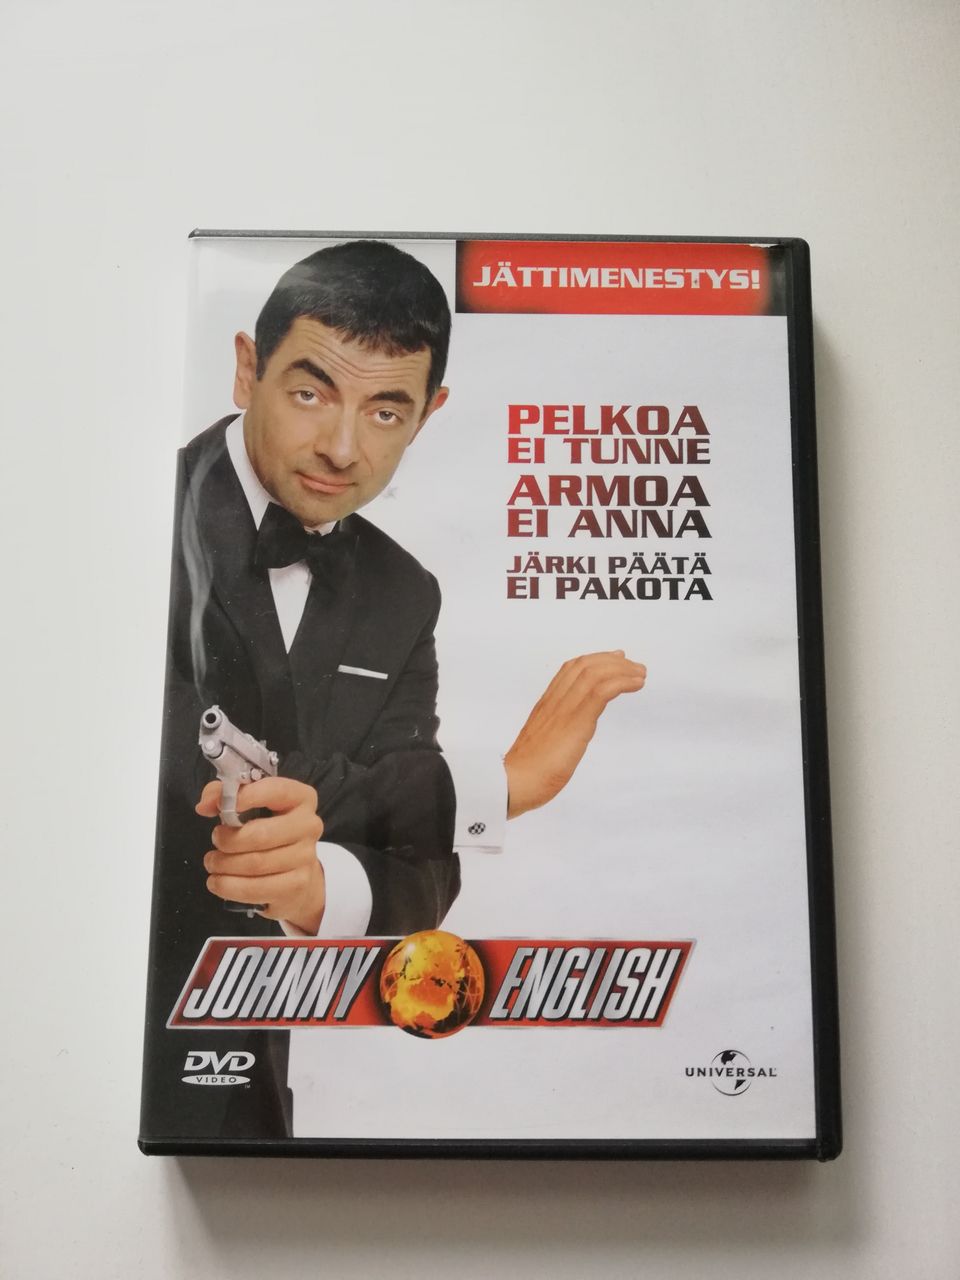 Johny English DVD